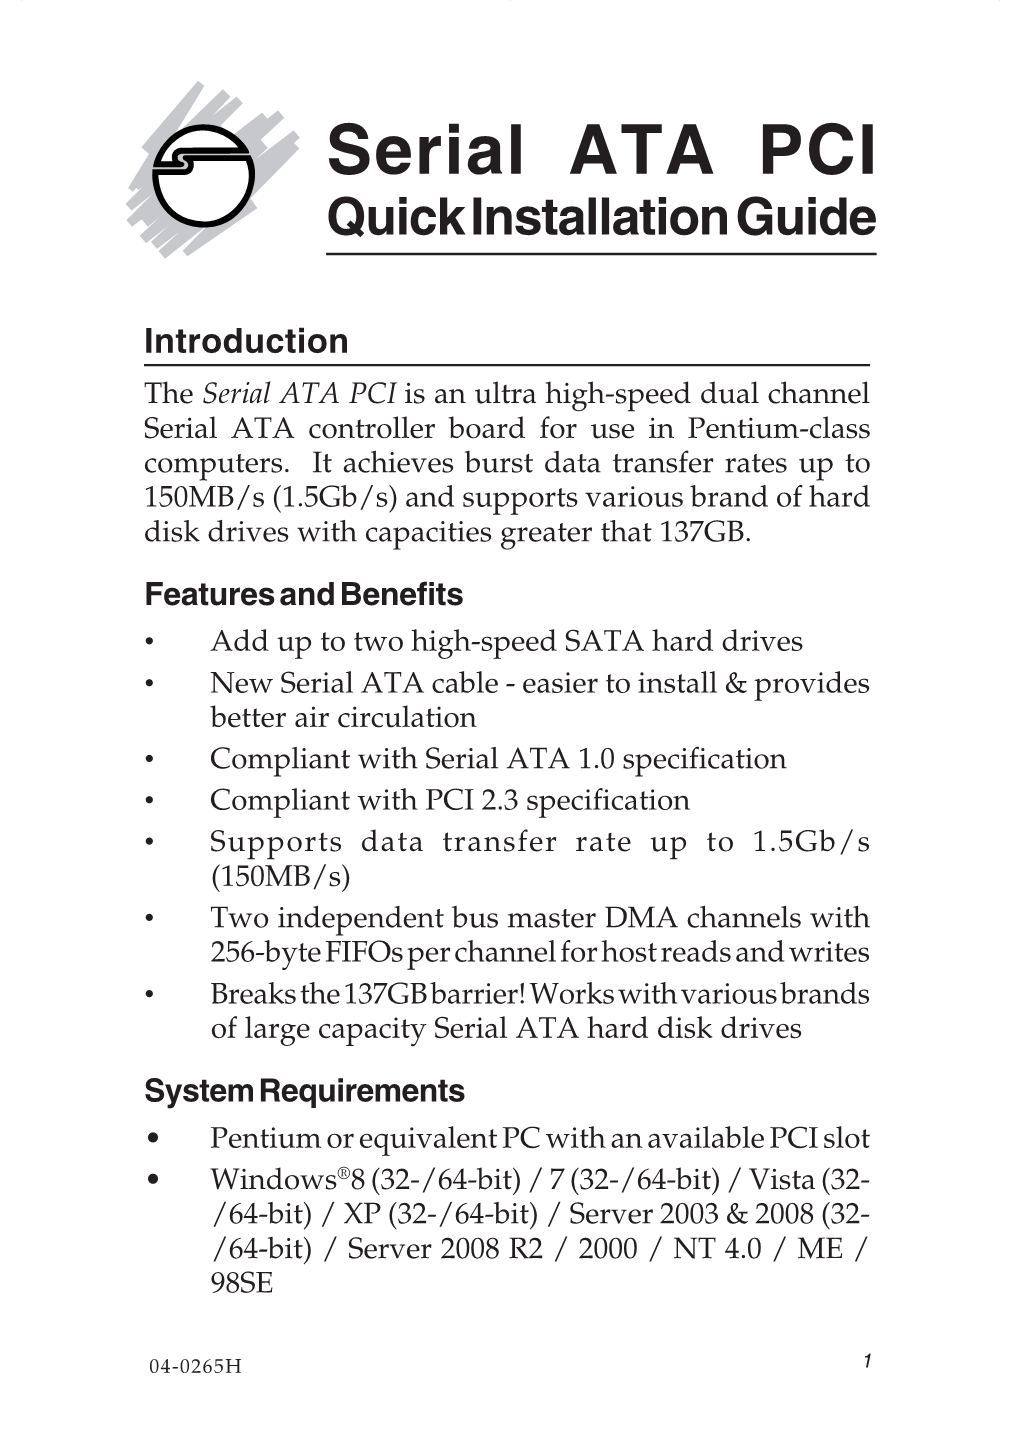 Serial ATA PCI Quick Installation Guide